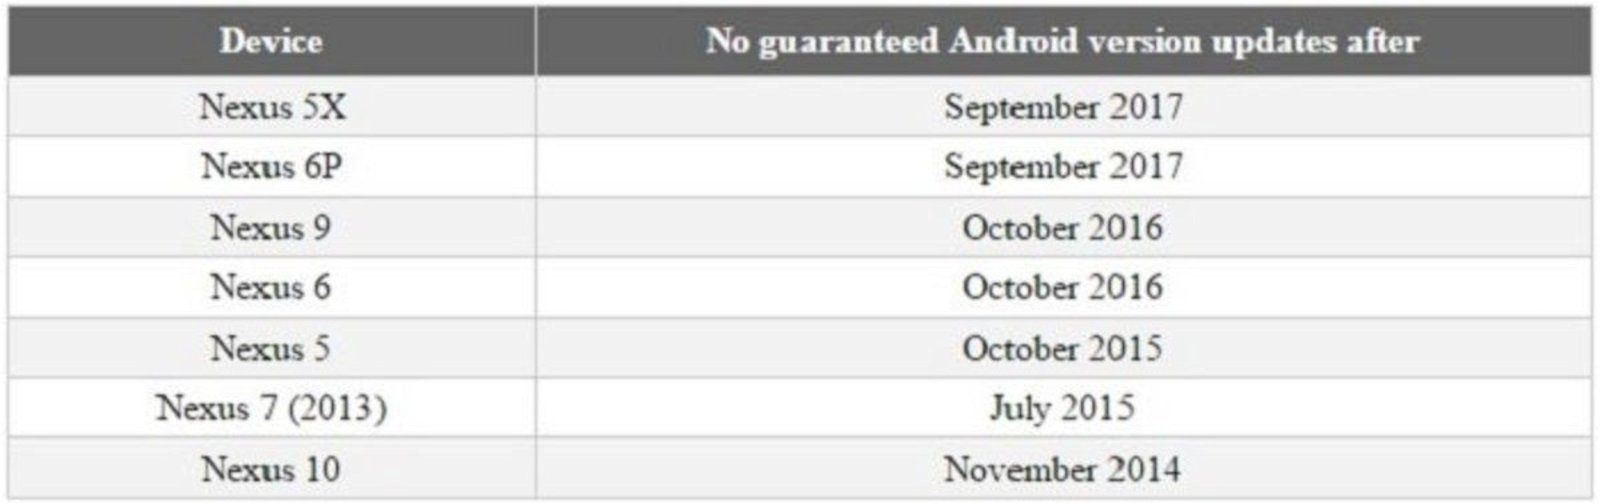 Actualizaciones Android N y O a dispositivos Nexus